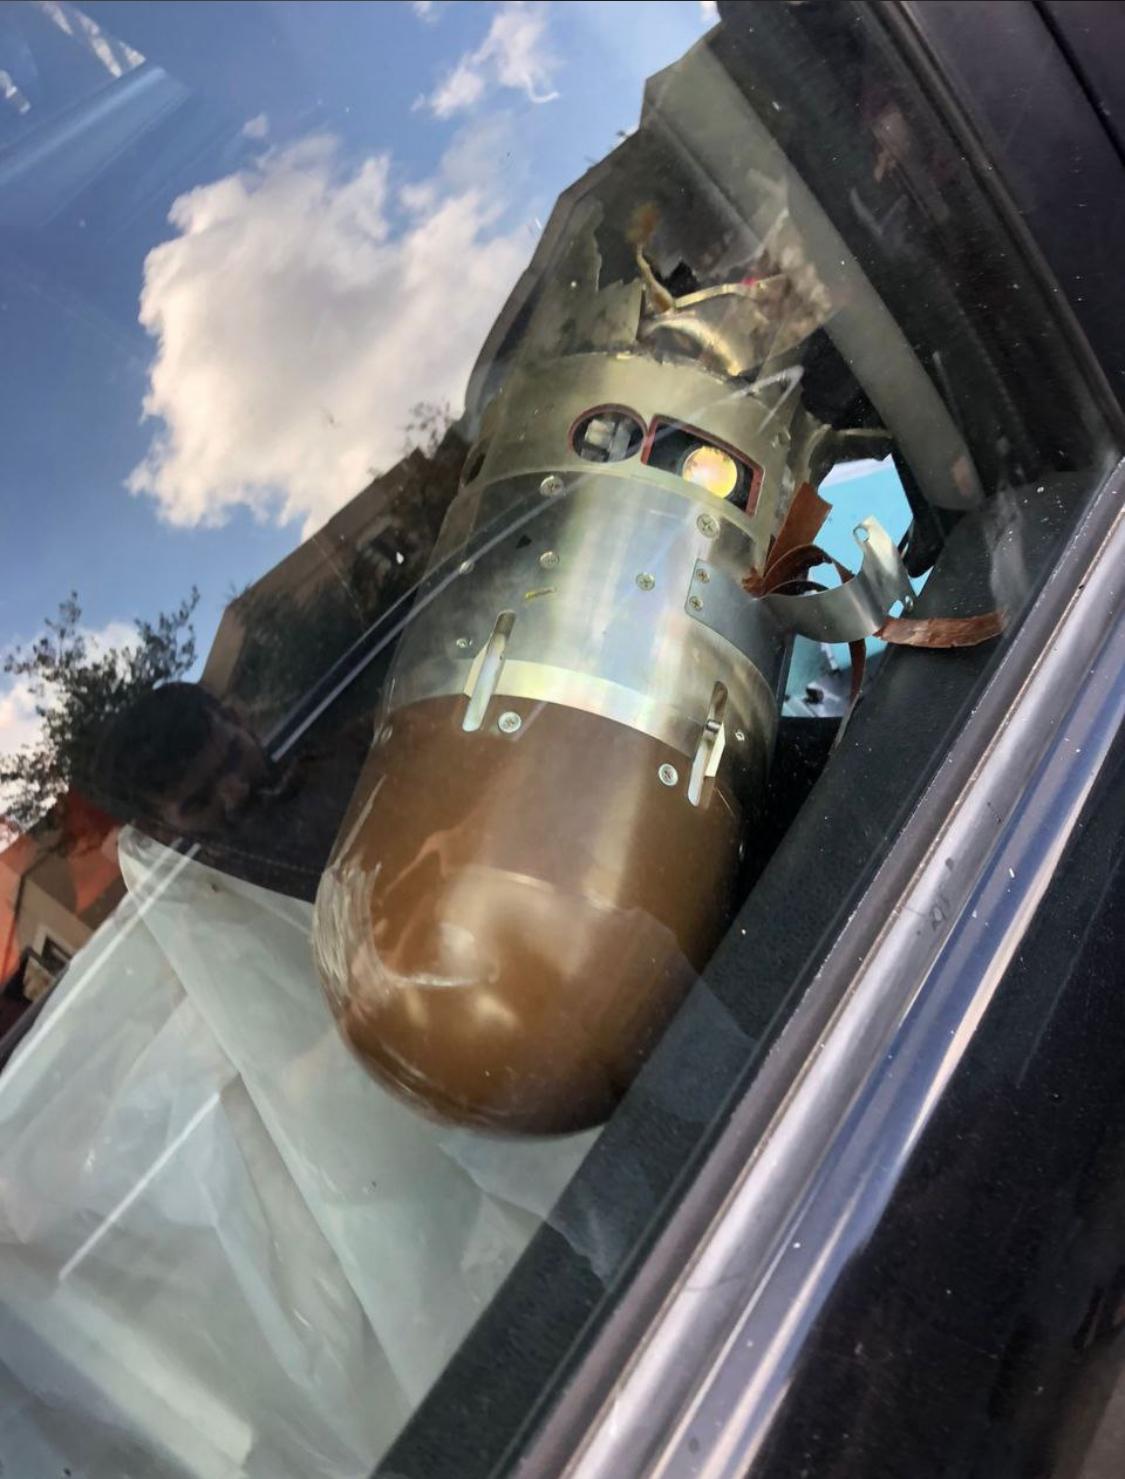 سقوط صاروخ إعتراضي مُعادي قرب مدرسة في بلدة ياطر الجنوبية 